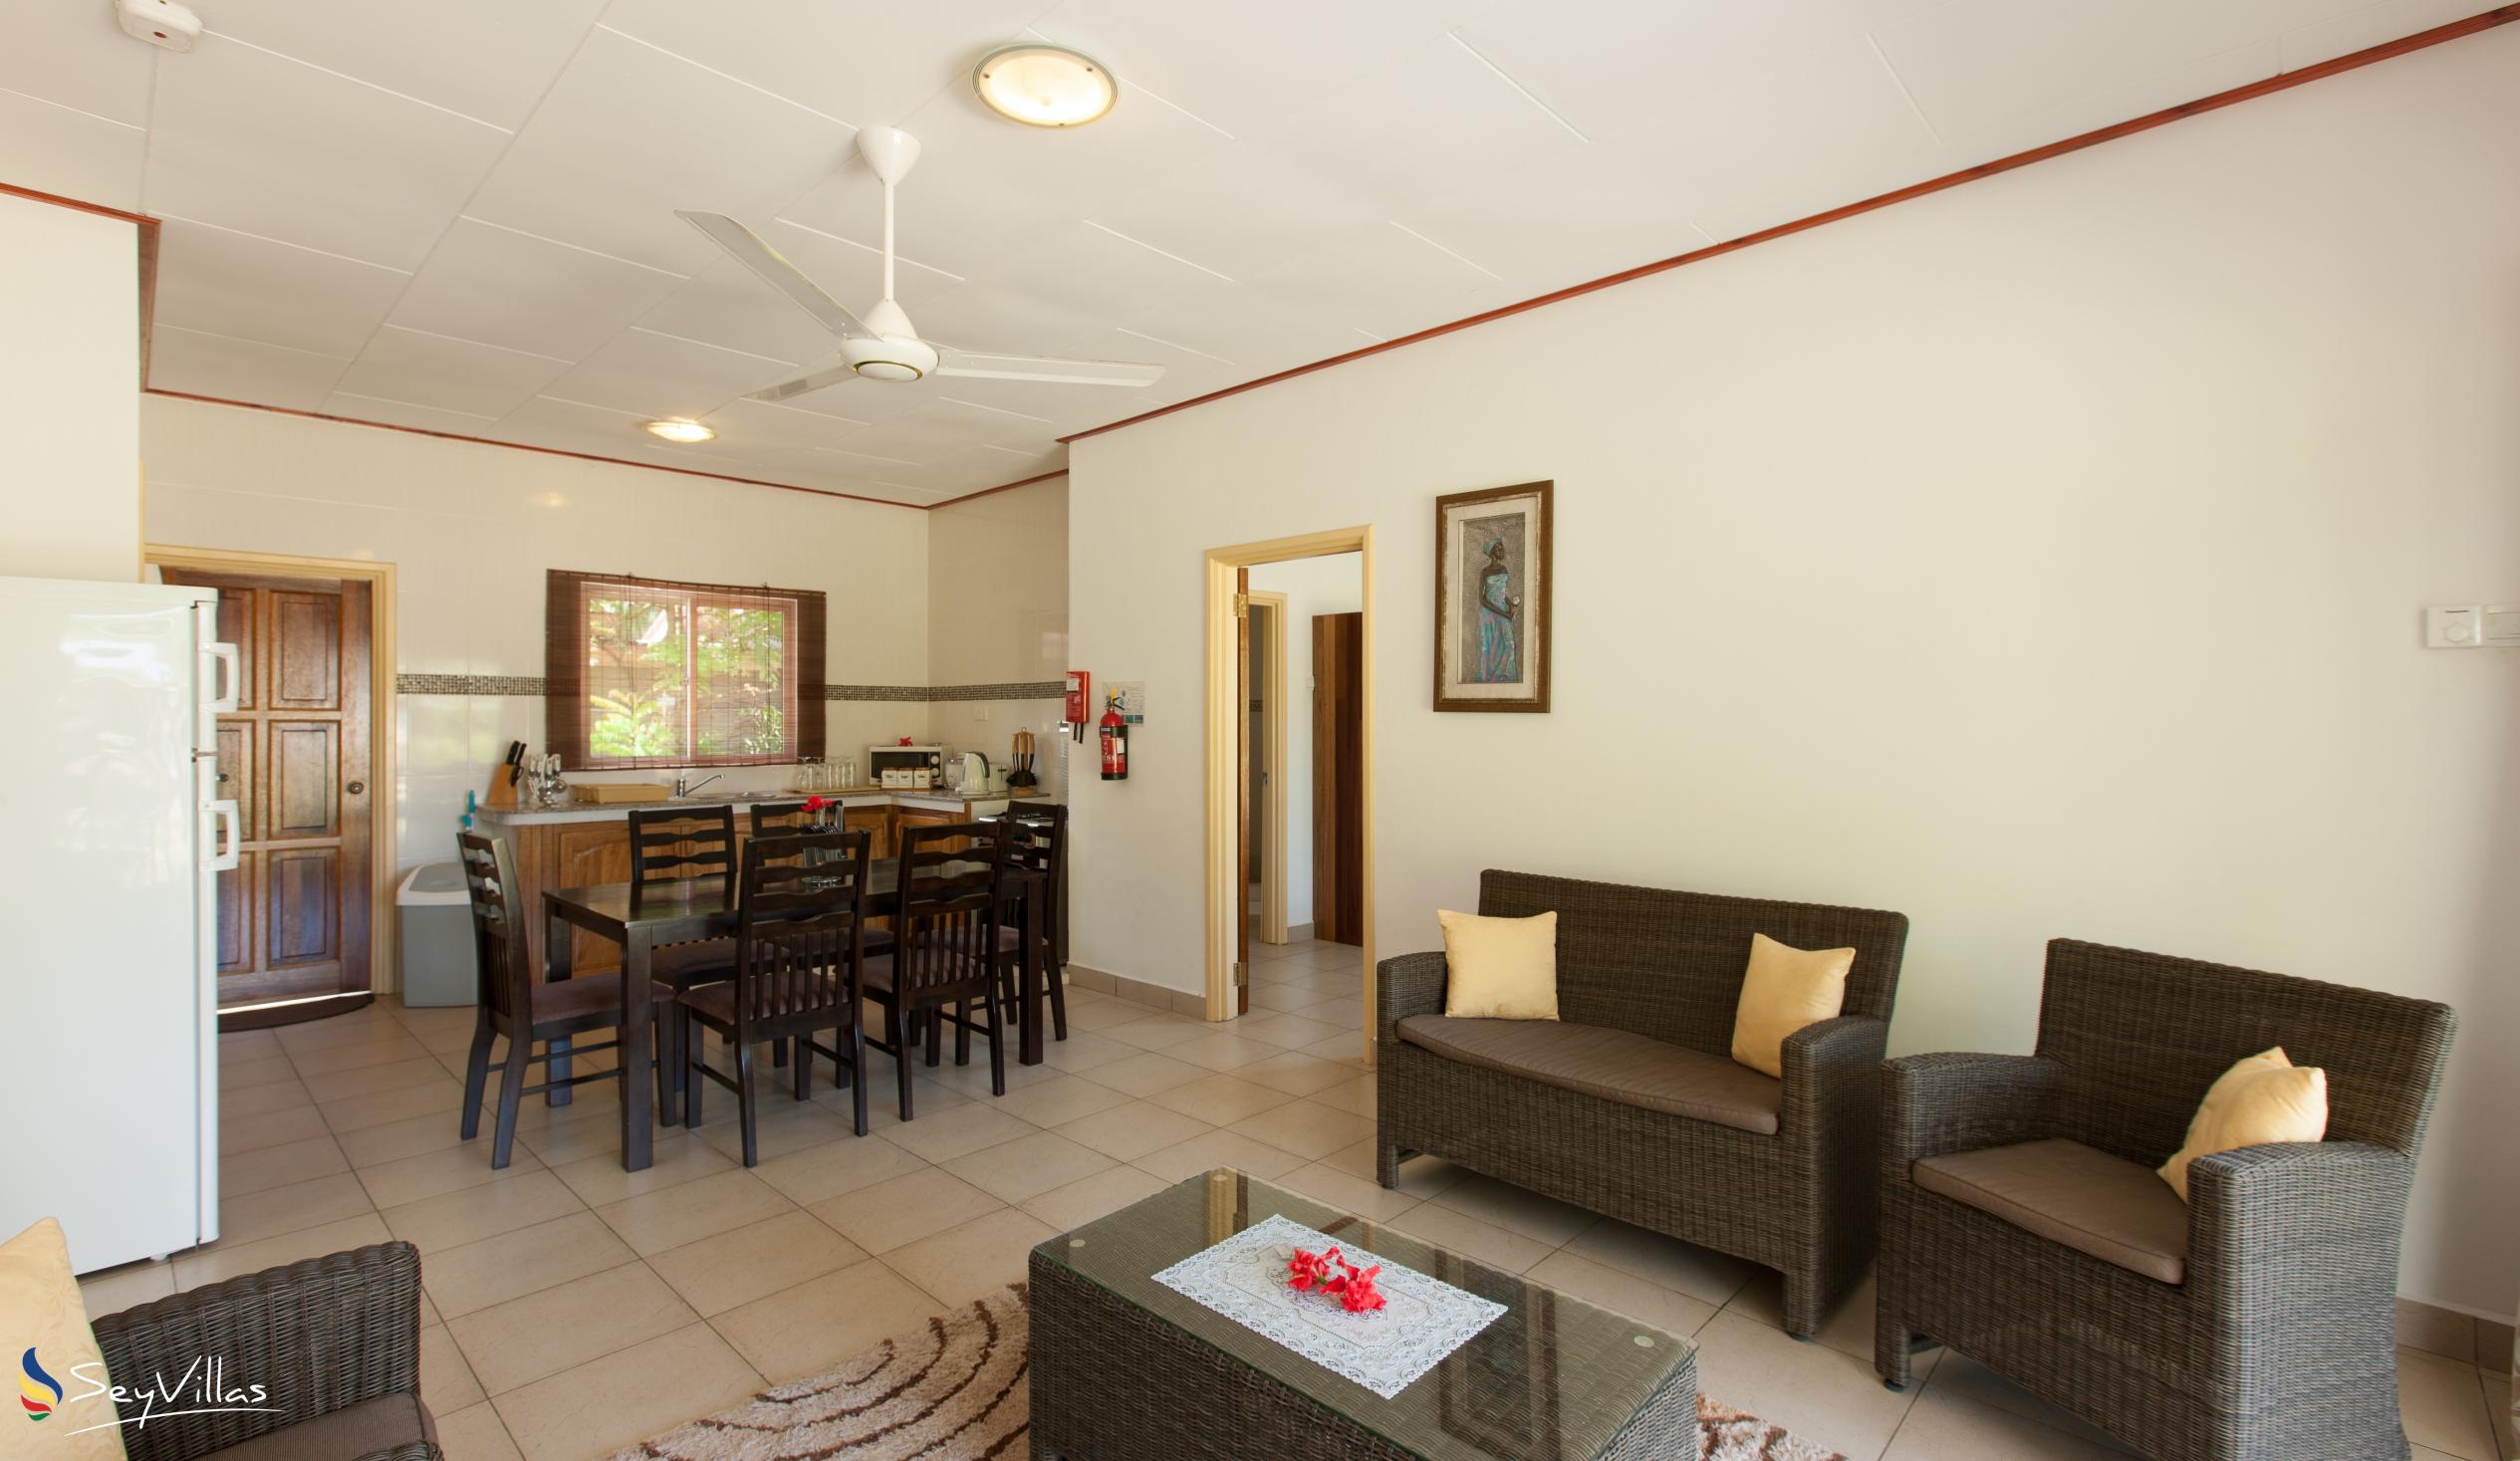 Foto 38: Hostellerie La Digue - Chalet 2 chambres - La Digue (Seychelles)